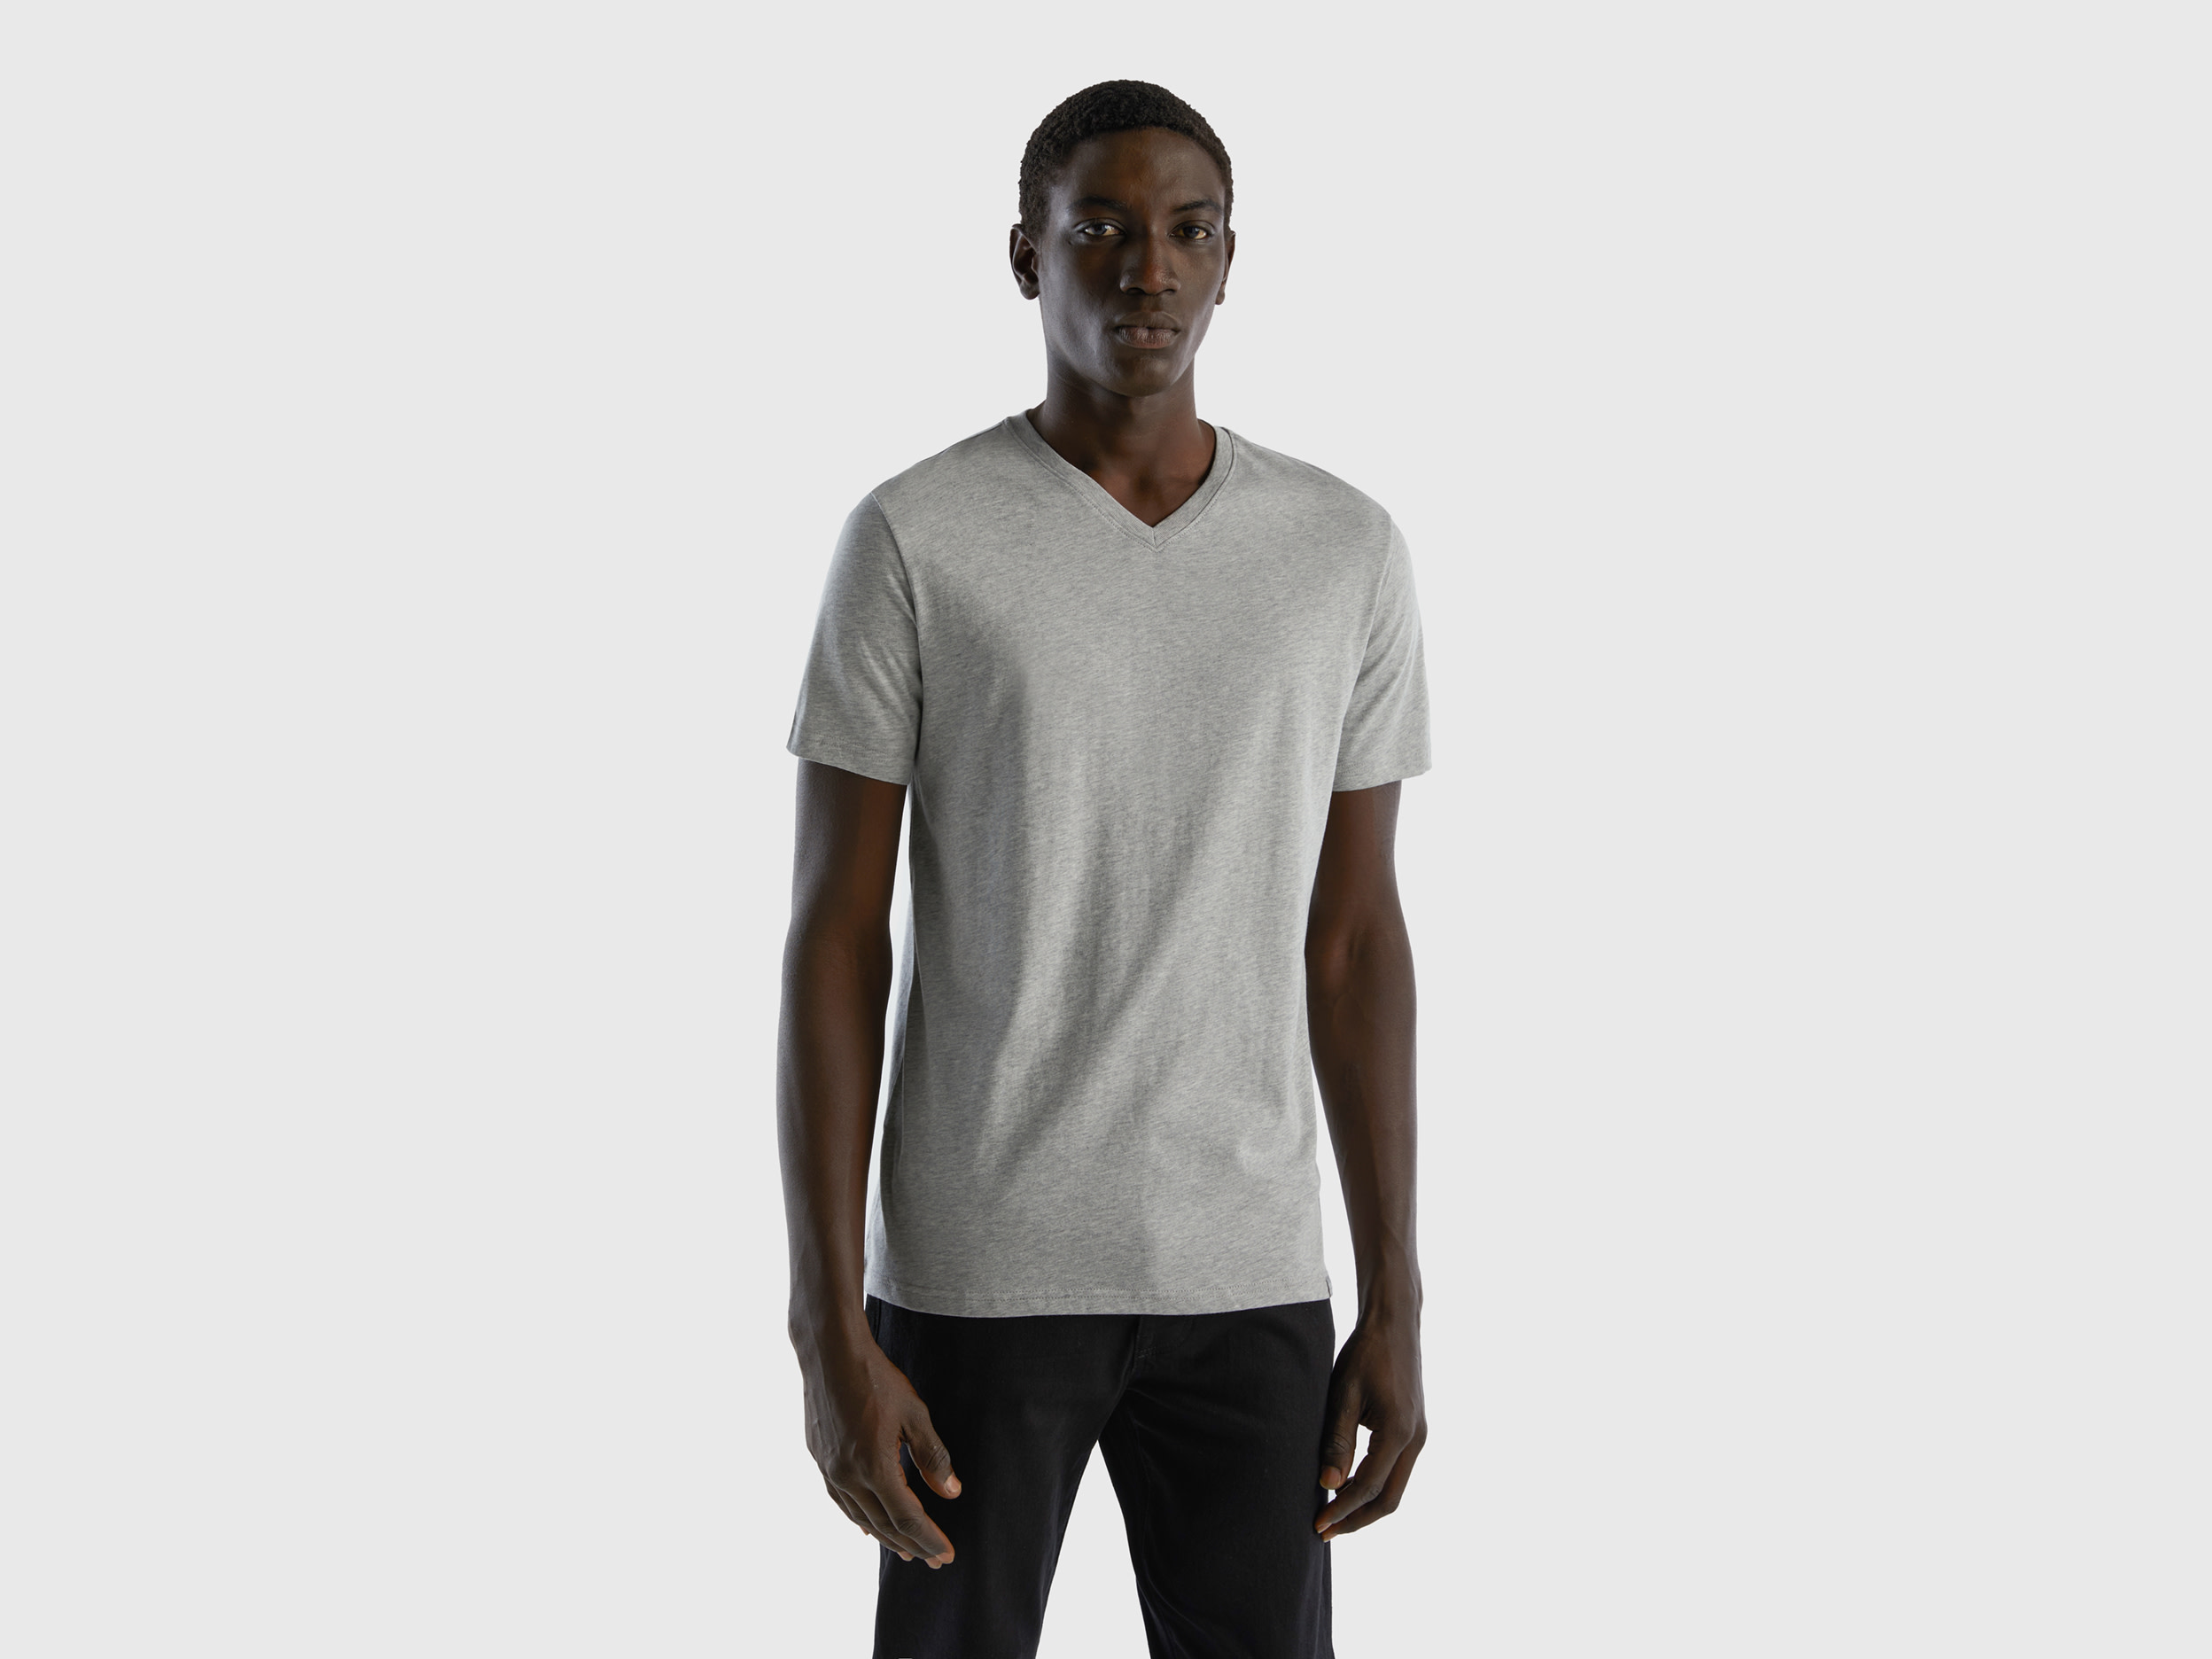 Benetton, T-shirt In Long Fiber Cotton, size S, Light Gray, Men